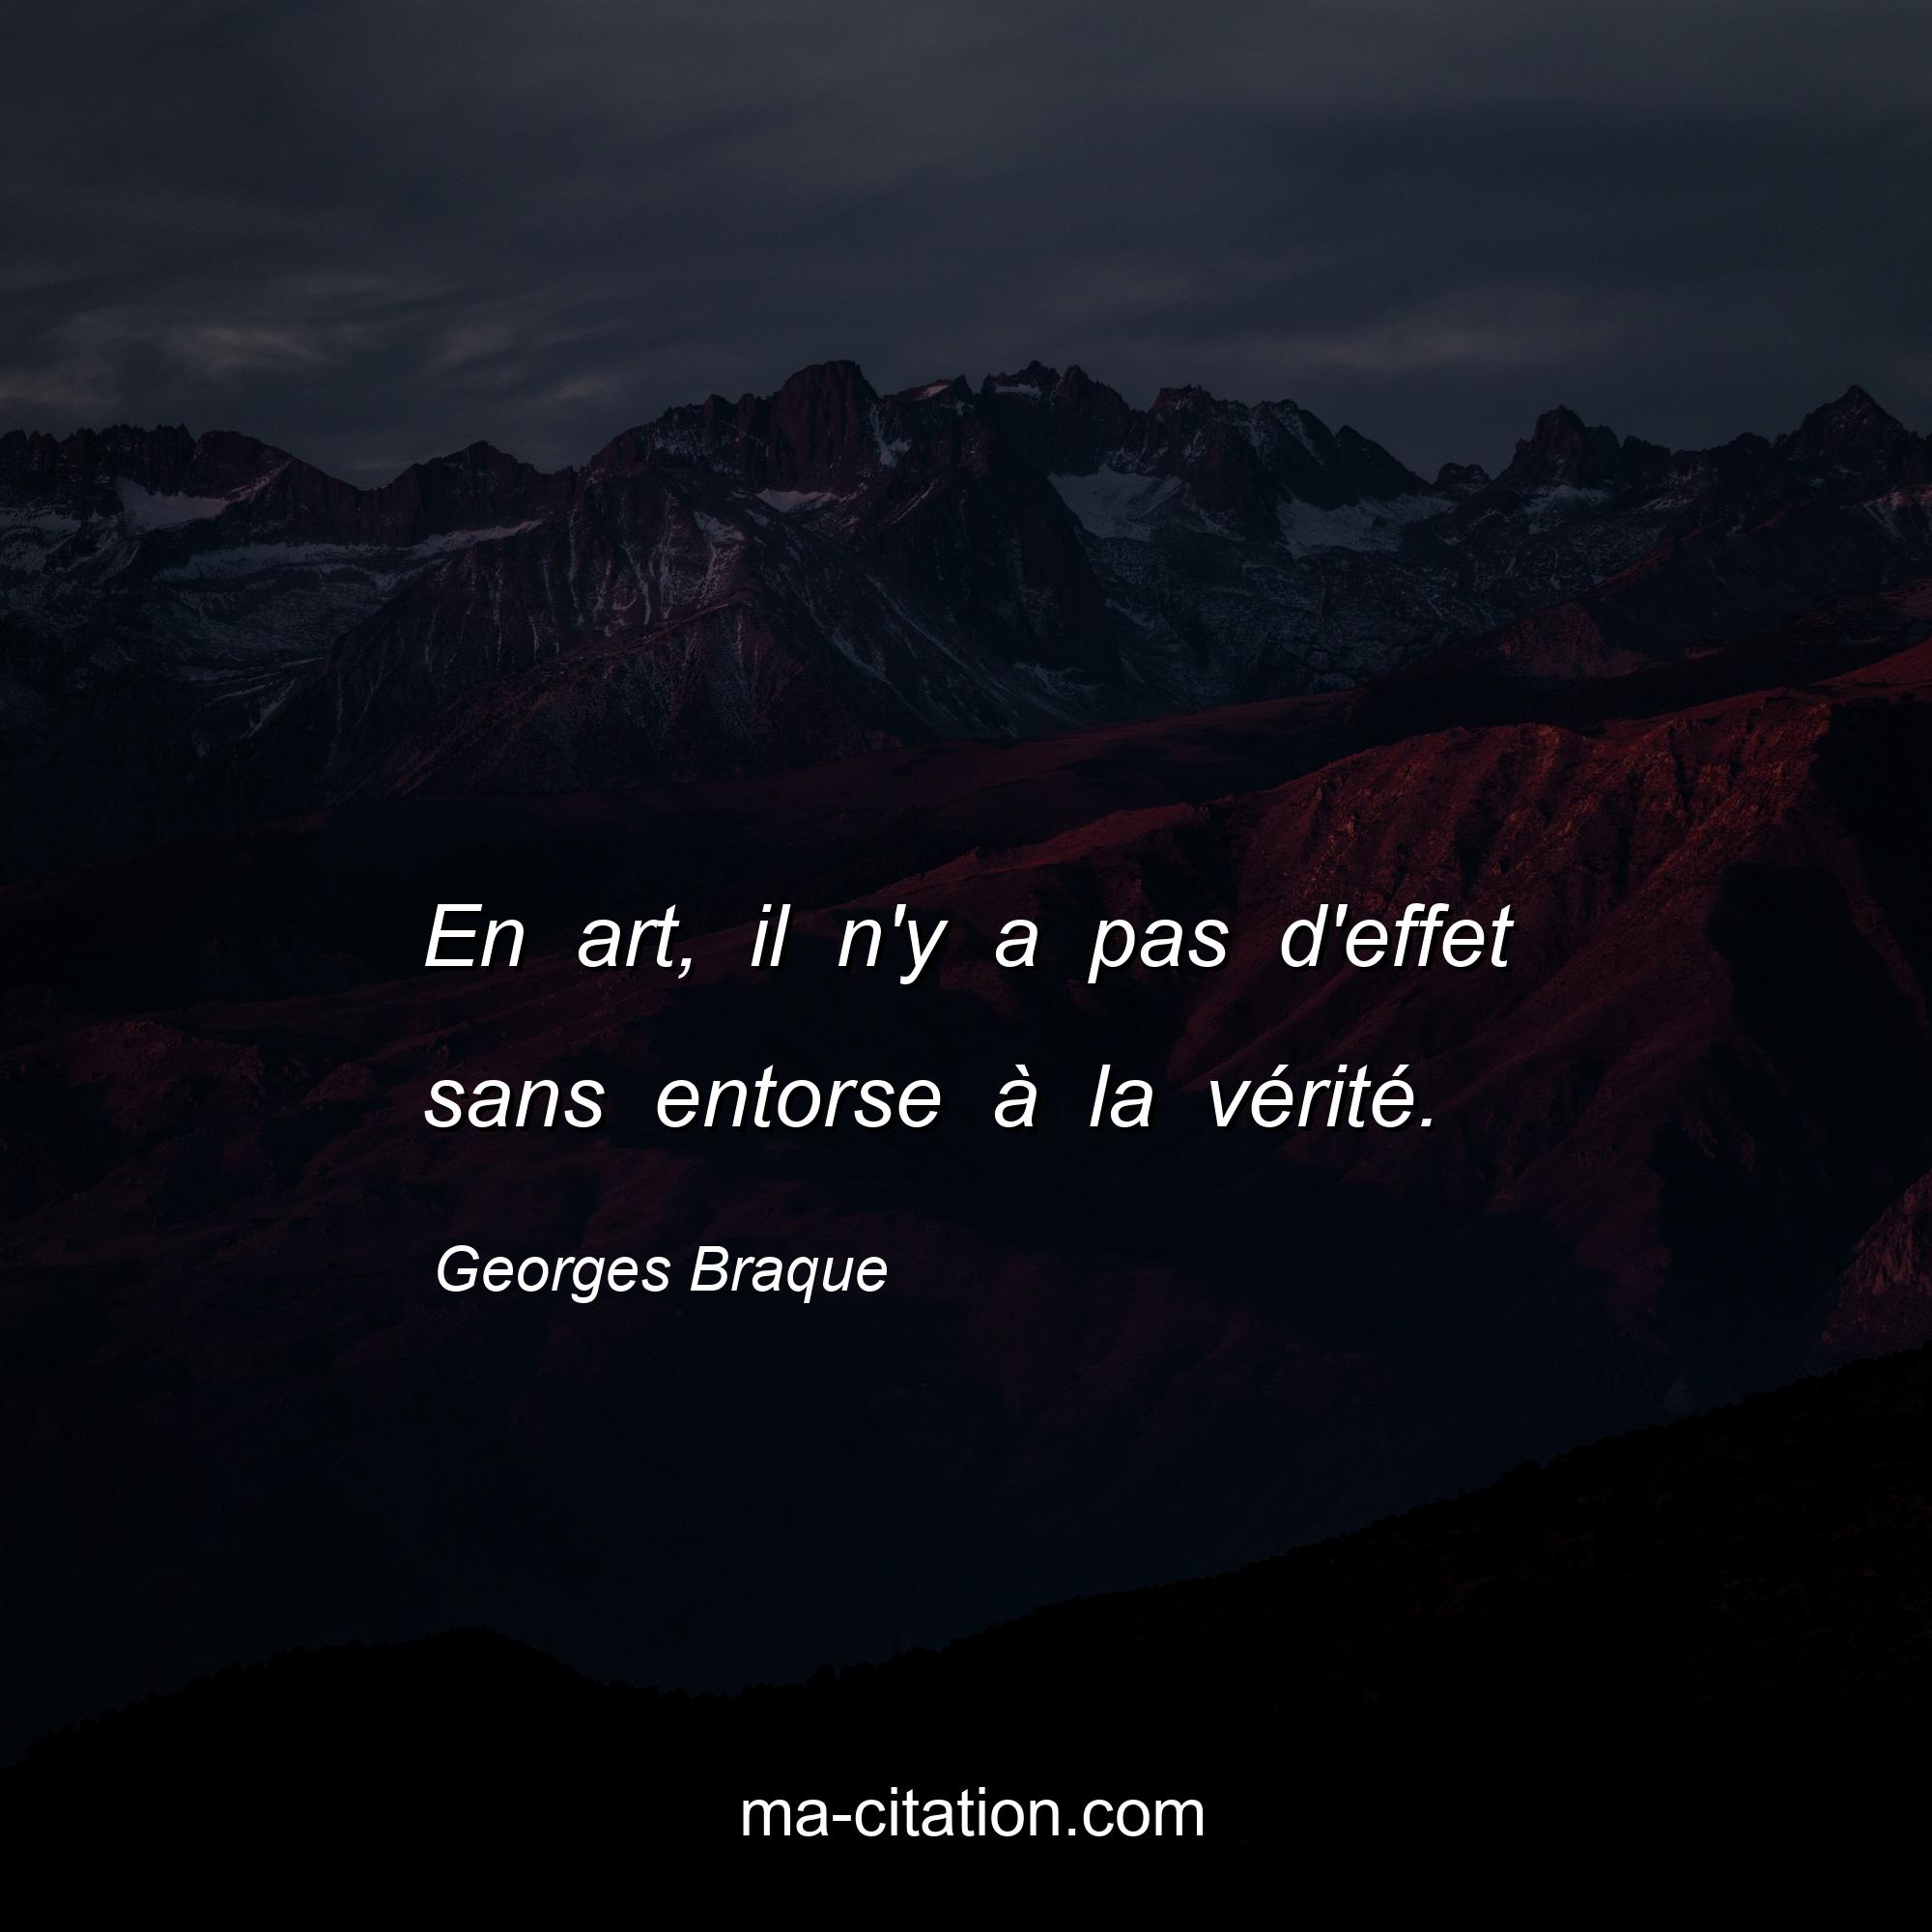 Georges Braque : En art, il n'y a pas d'effet sans entorse à la vérité.